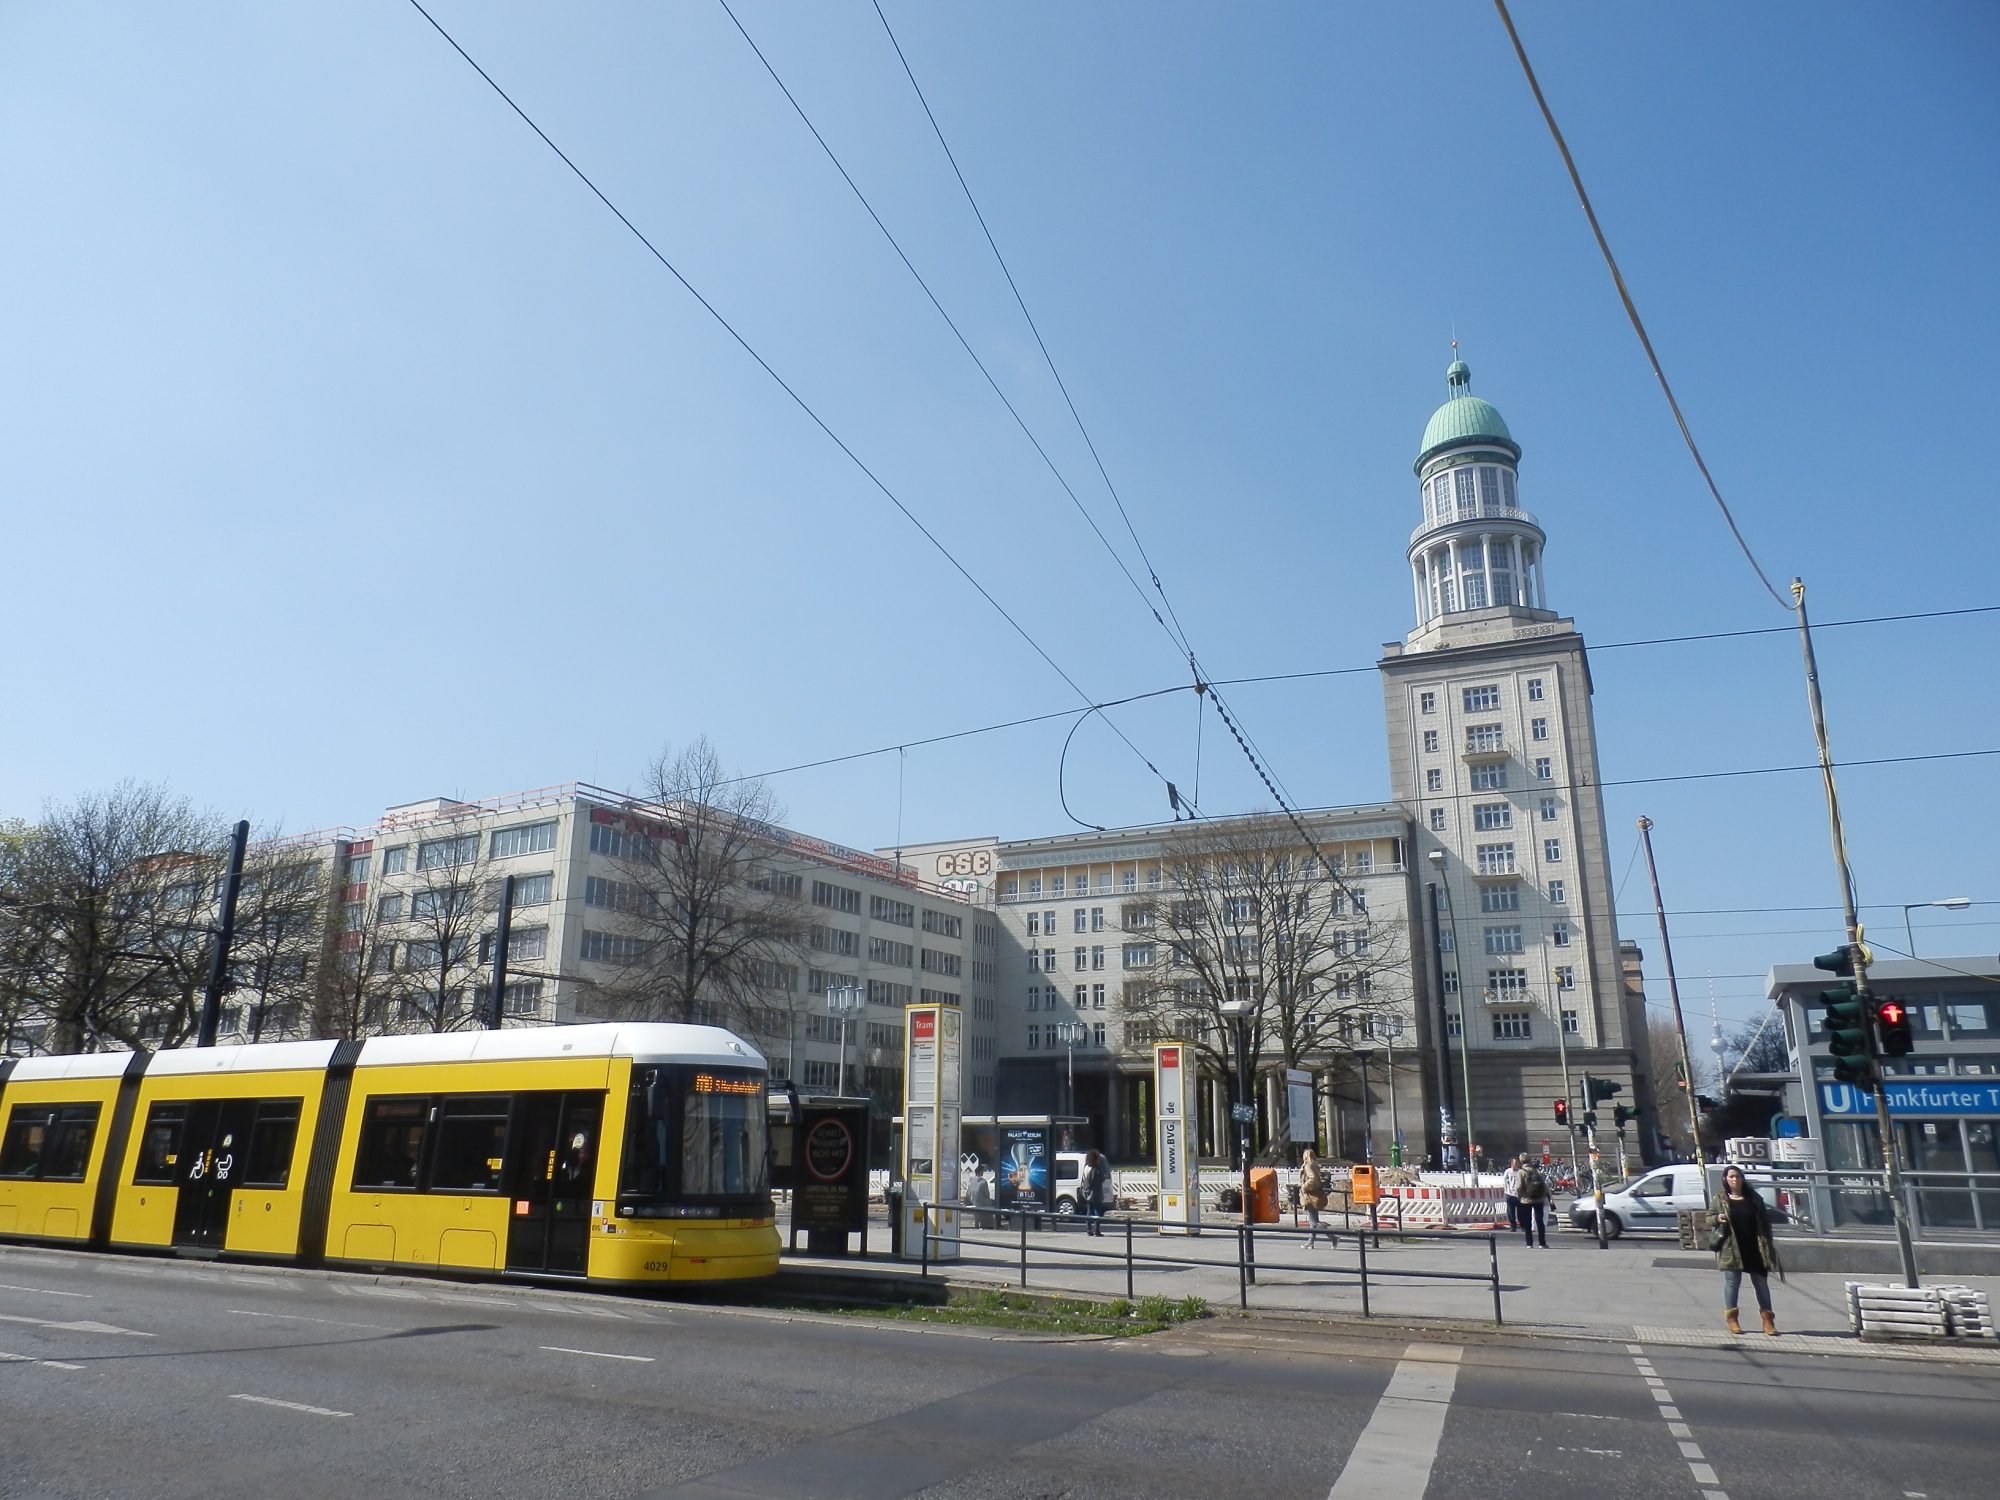 Verbesserungsbedarfe der interaktiven Bürgerbeteiligung in der Stadtplanung am Beispiel der Planungen zu den Bahnhofsvorplätzen am Ostkreuz? – Kleine Anfrage